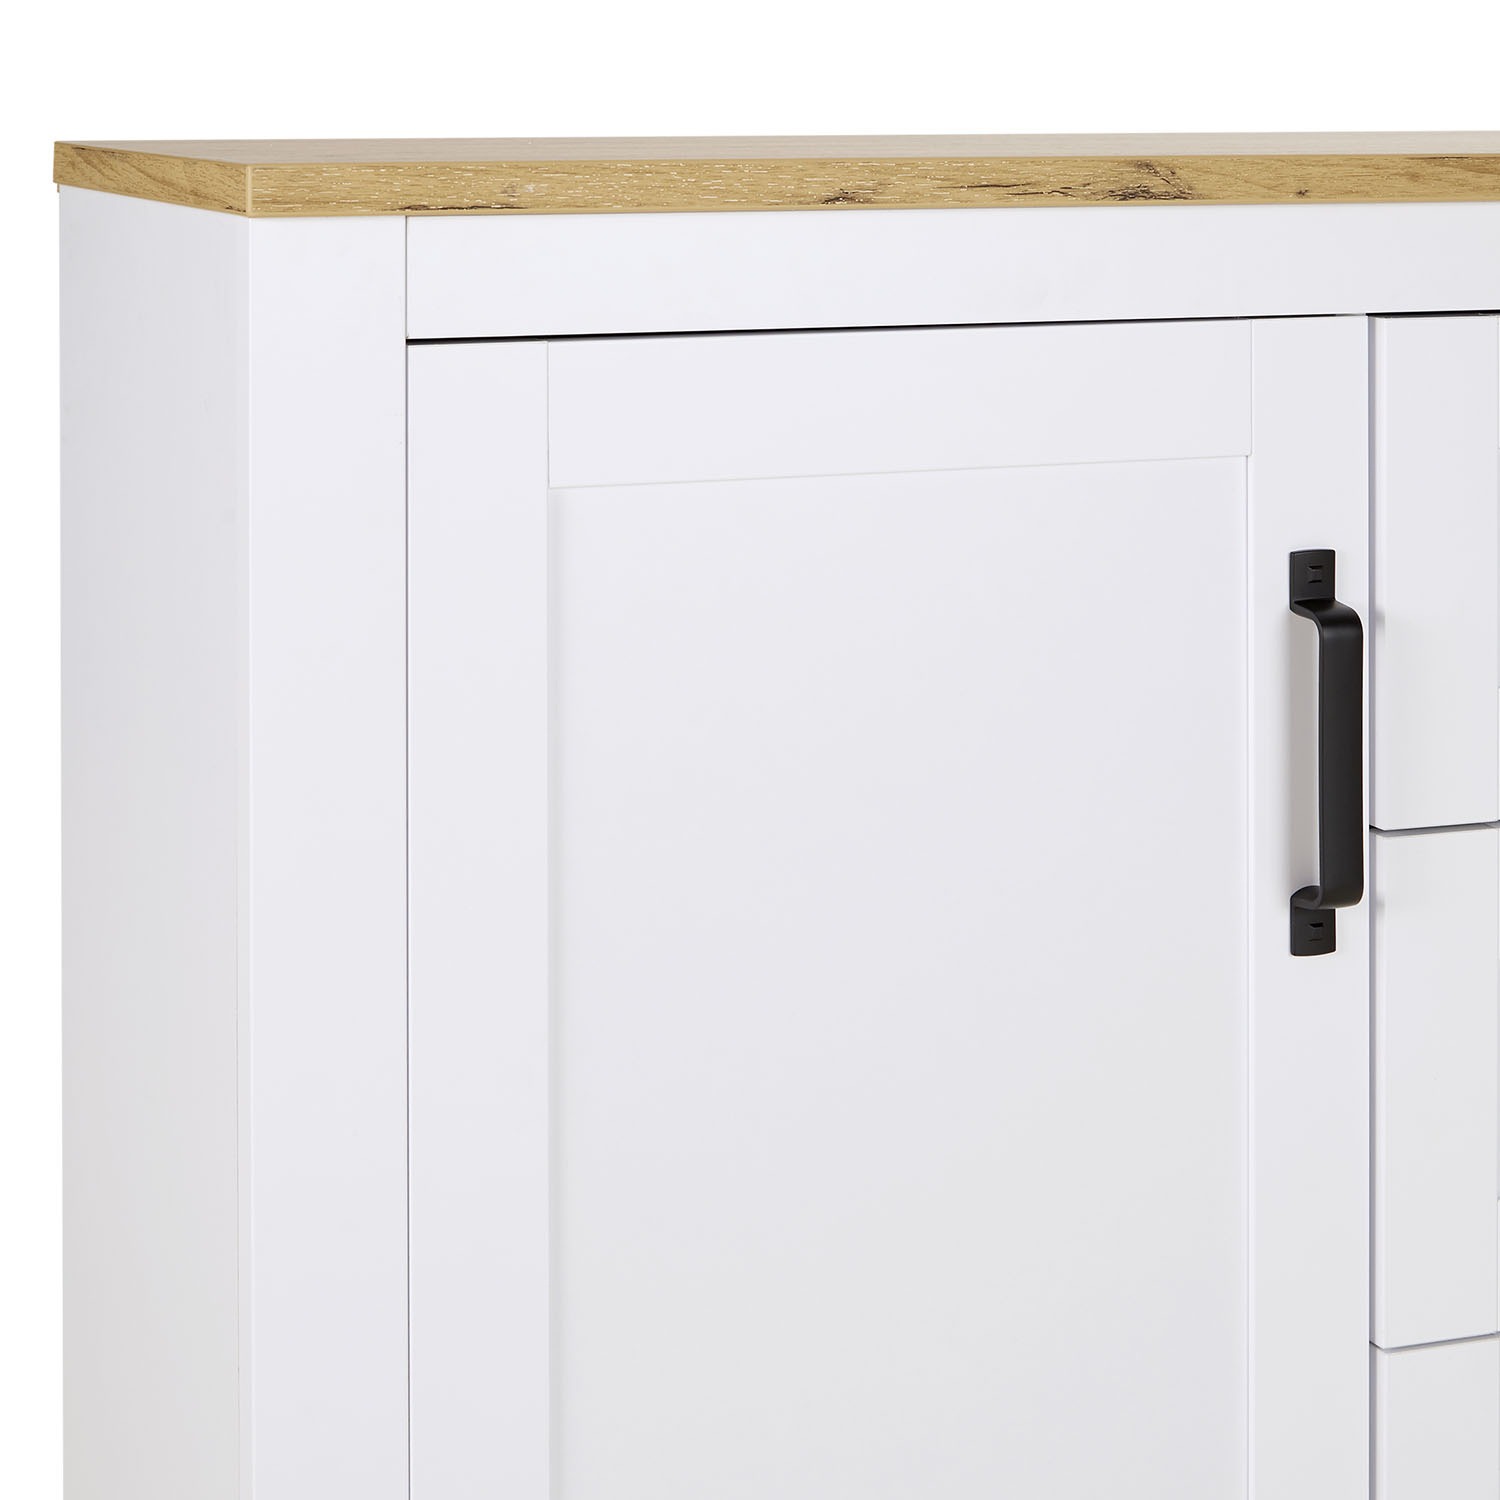 Kommode Sideboard Weiß 150 cm mit 3 Schubladen Schrank Holz Eiche Highboard Anrichte Beistellschrank